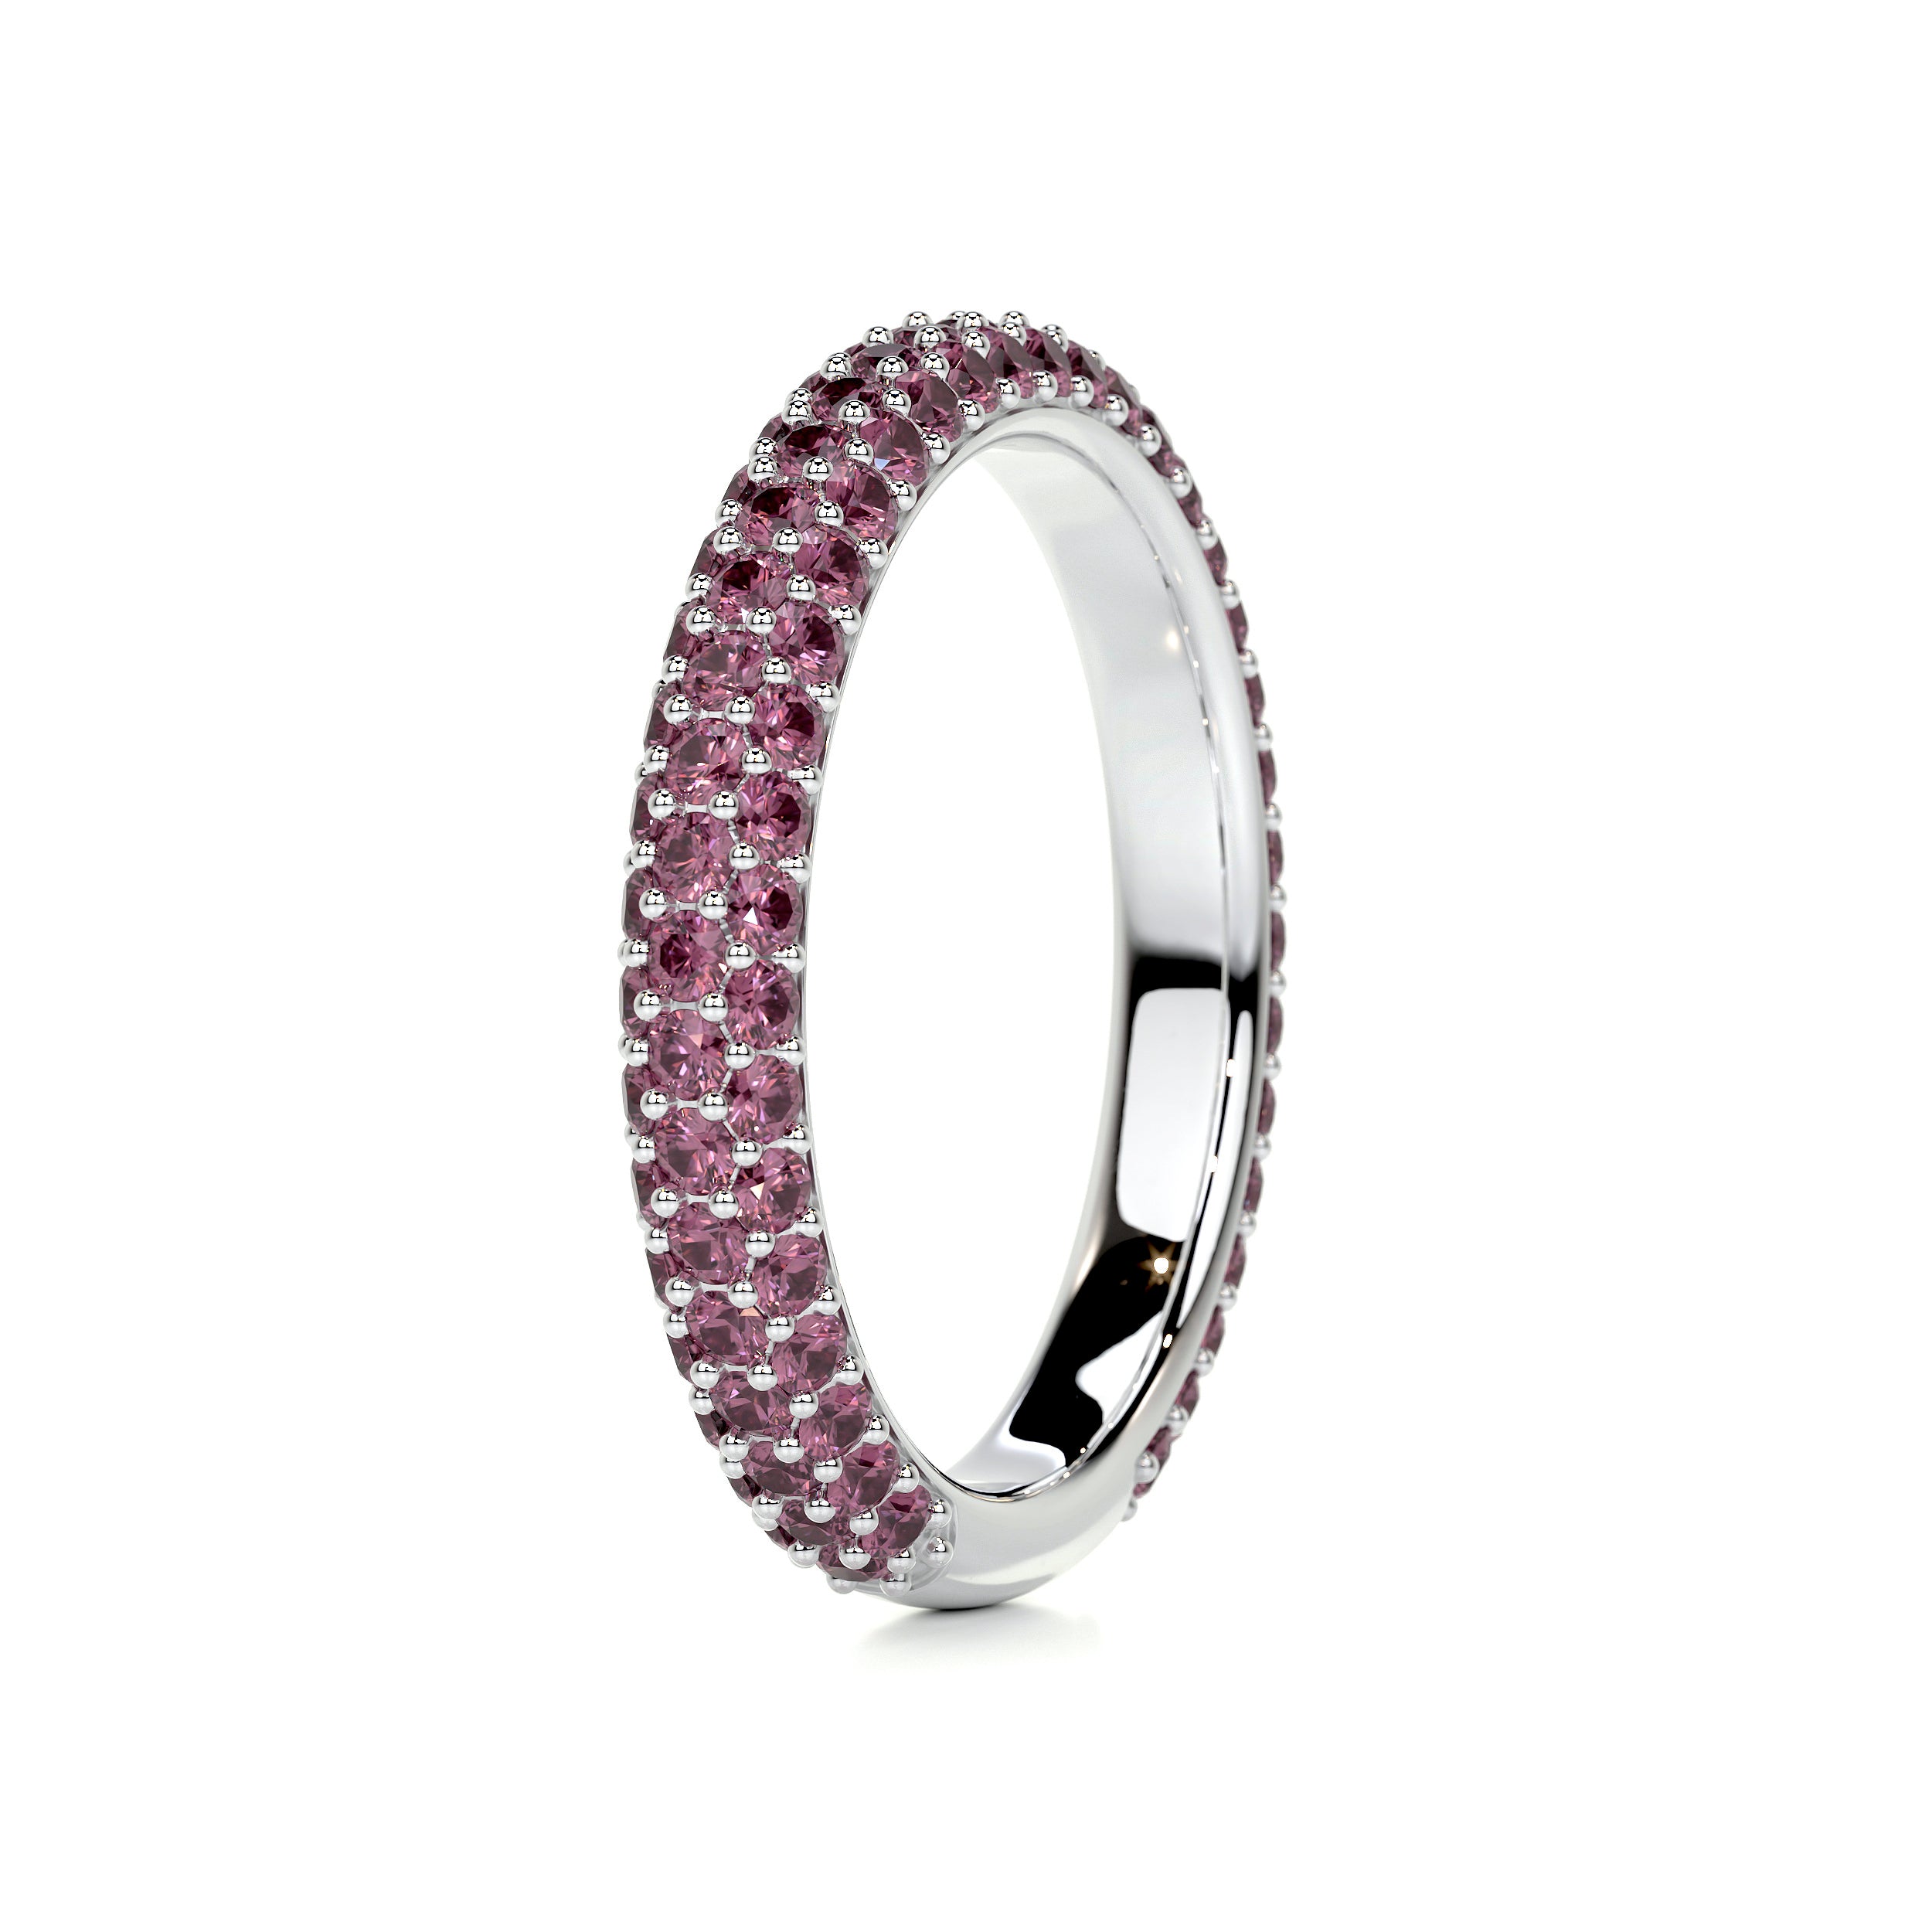 Emma Pink Gemstone Wedding Ring   (1.25 Carat) - 18K White Gold